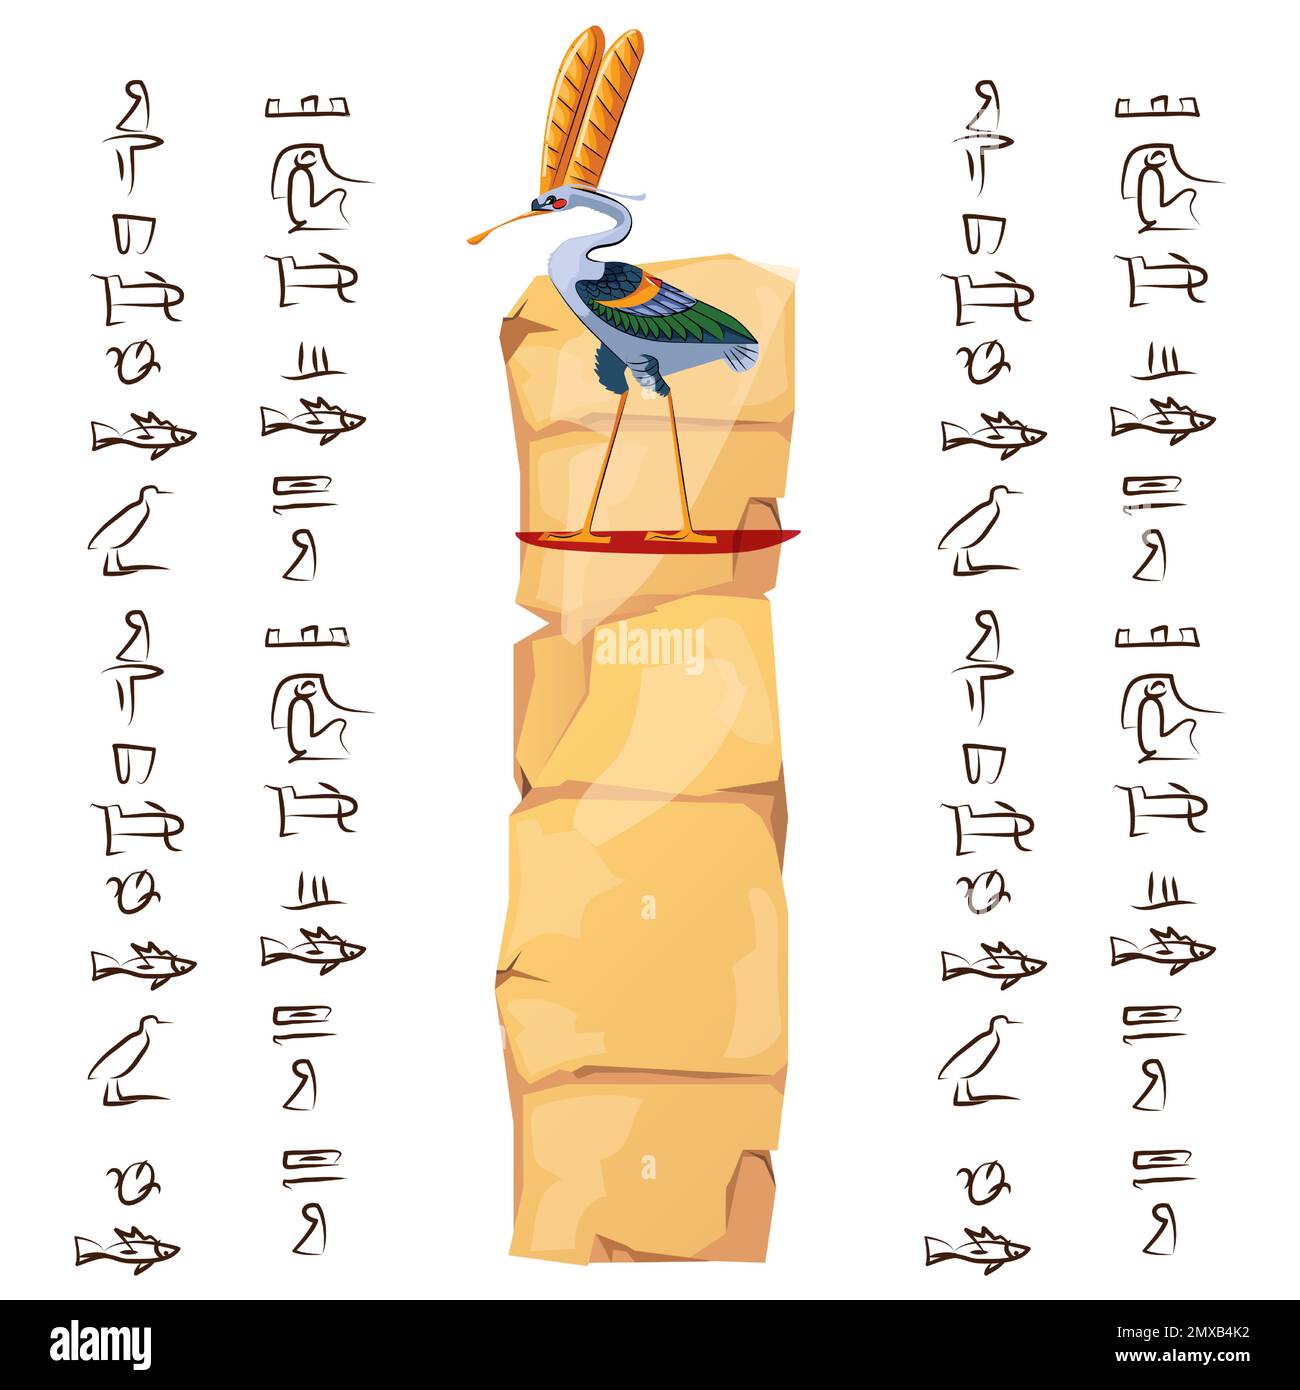 Papyrus-Teil oder Steinsäule aus dem alten Ägypten mit Vektordarstellung der heiligen Vogelfigur. Ägyptisches Kultursymbol, unbeschriftetes, antikes Papier mit Ibis und Hieroglyphen, isoliert auf Weiß Stock Vektor